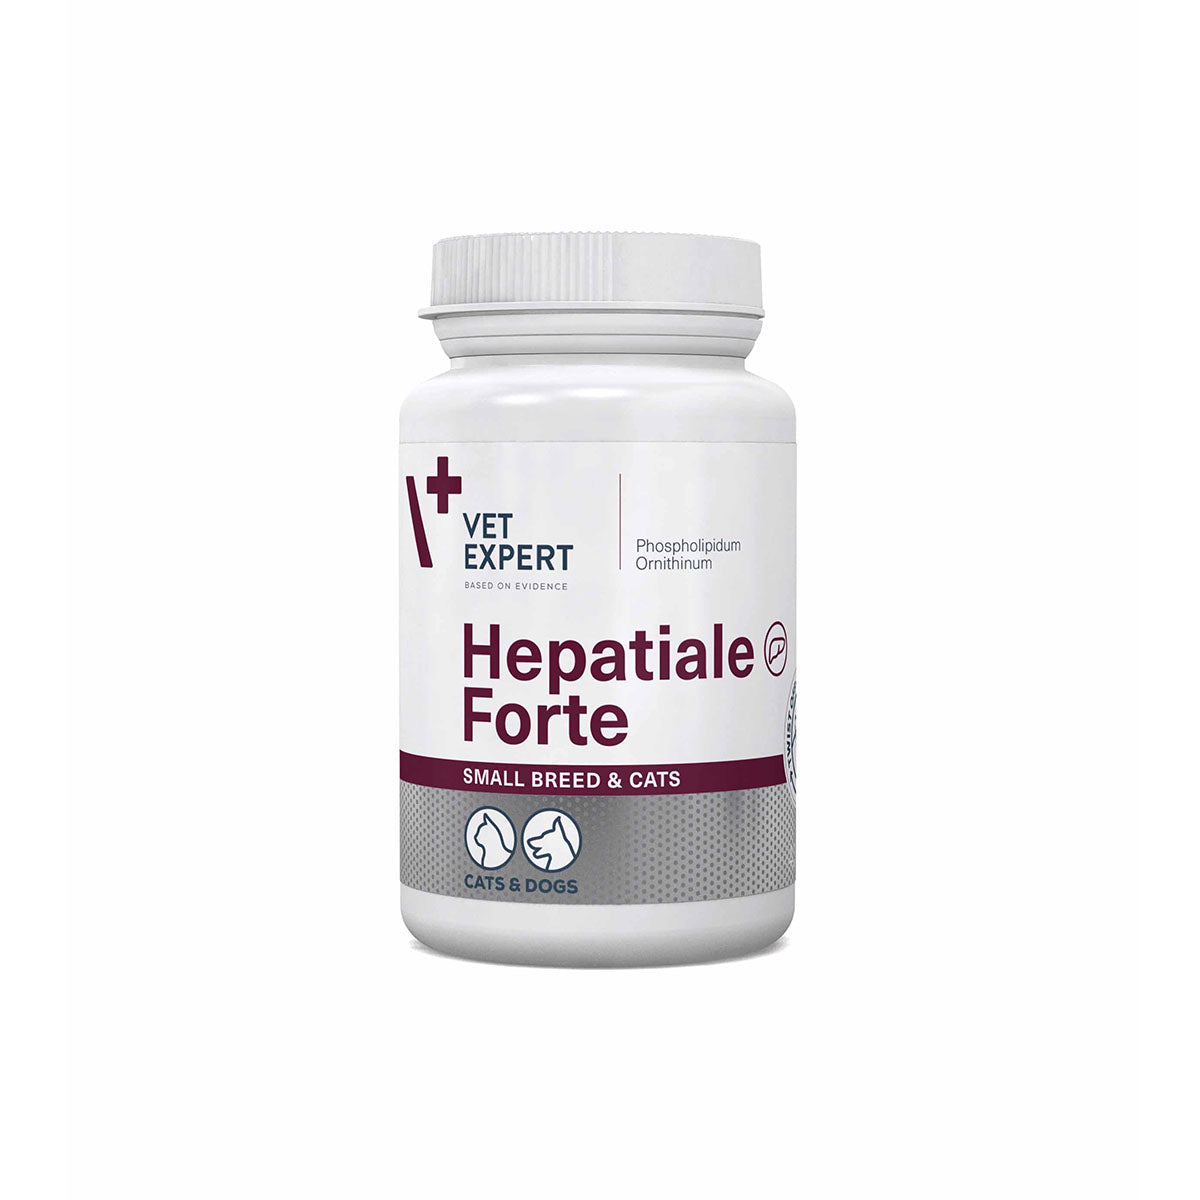 Hepatiale®Forte small breed & cats - papildas kepenų funkcijai gerinti